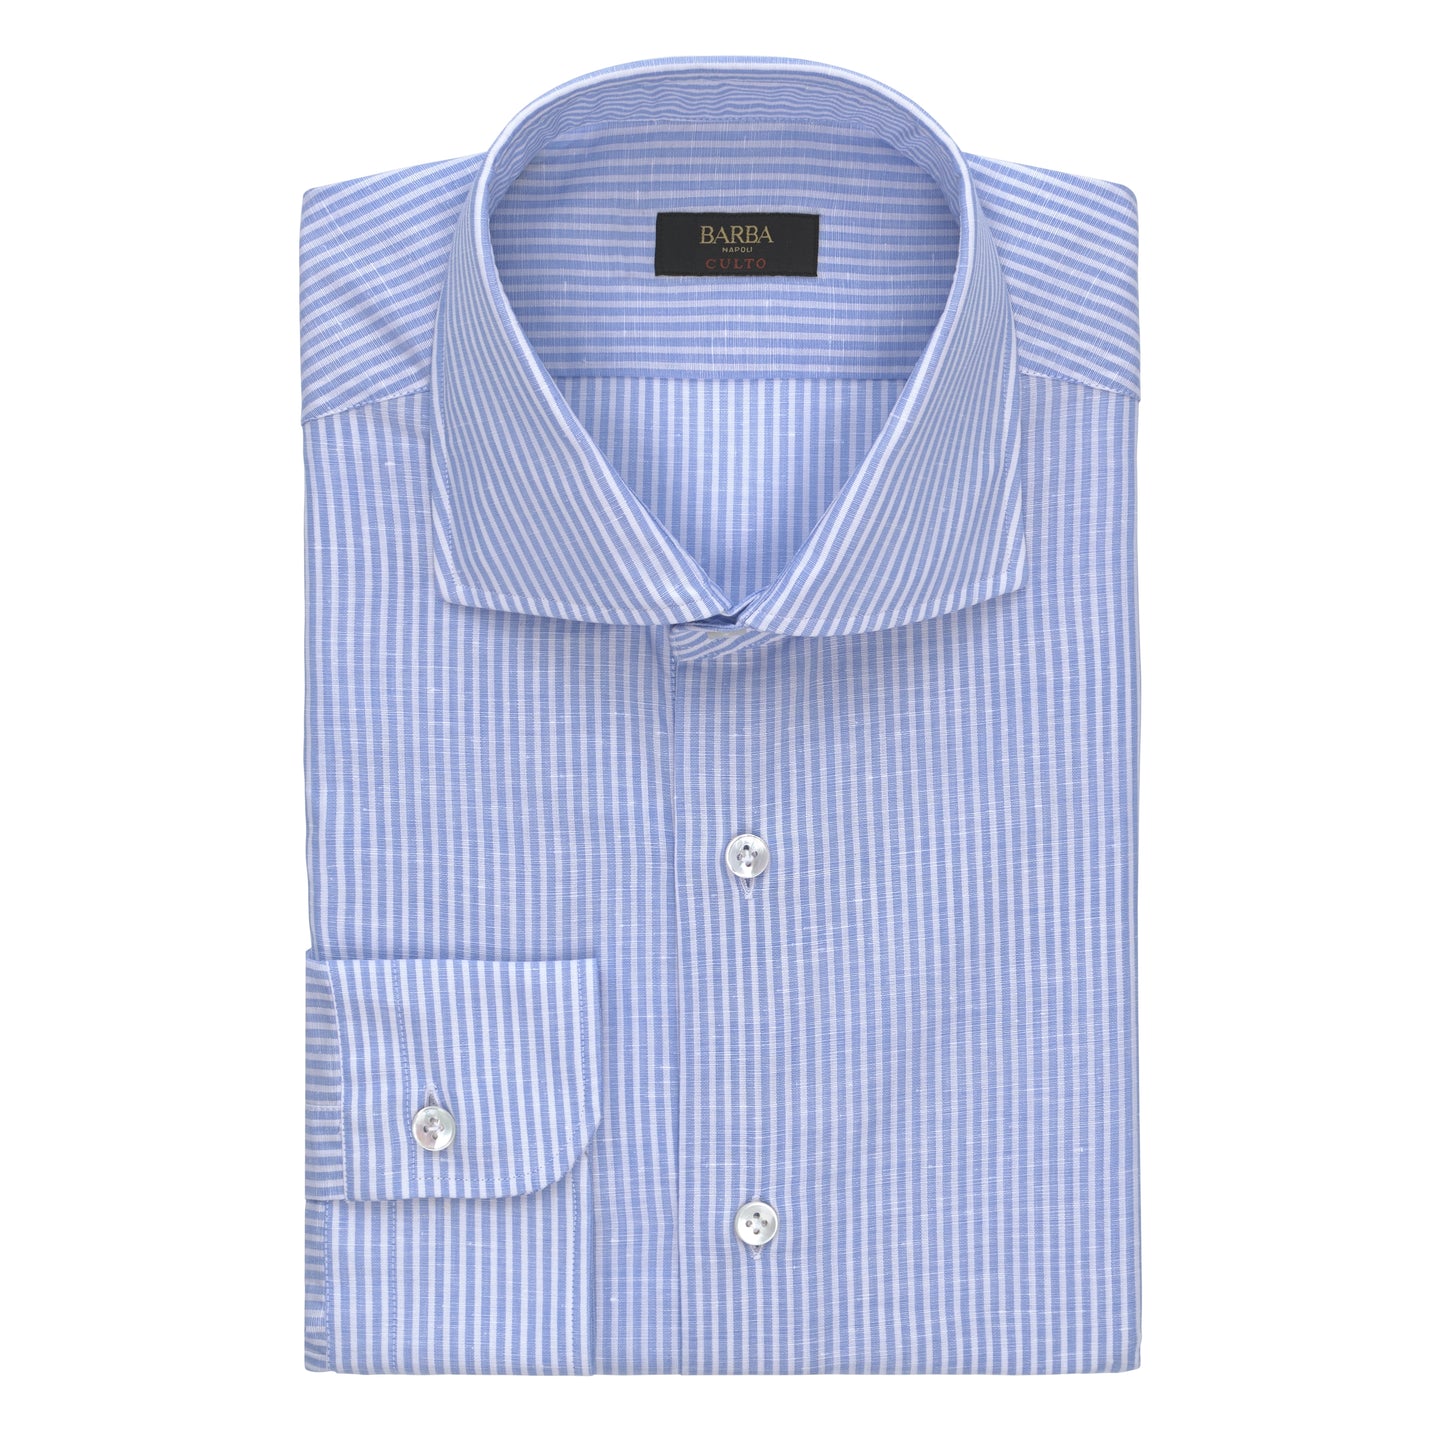 Gestreiftes Hemd aus Leinen-Baumwoll-Mischgewebe in Hellblau und Weiß